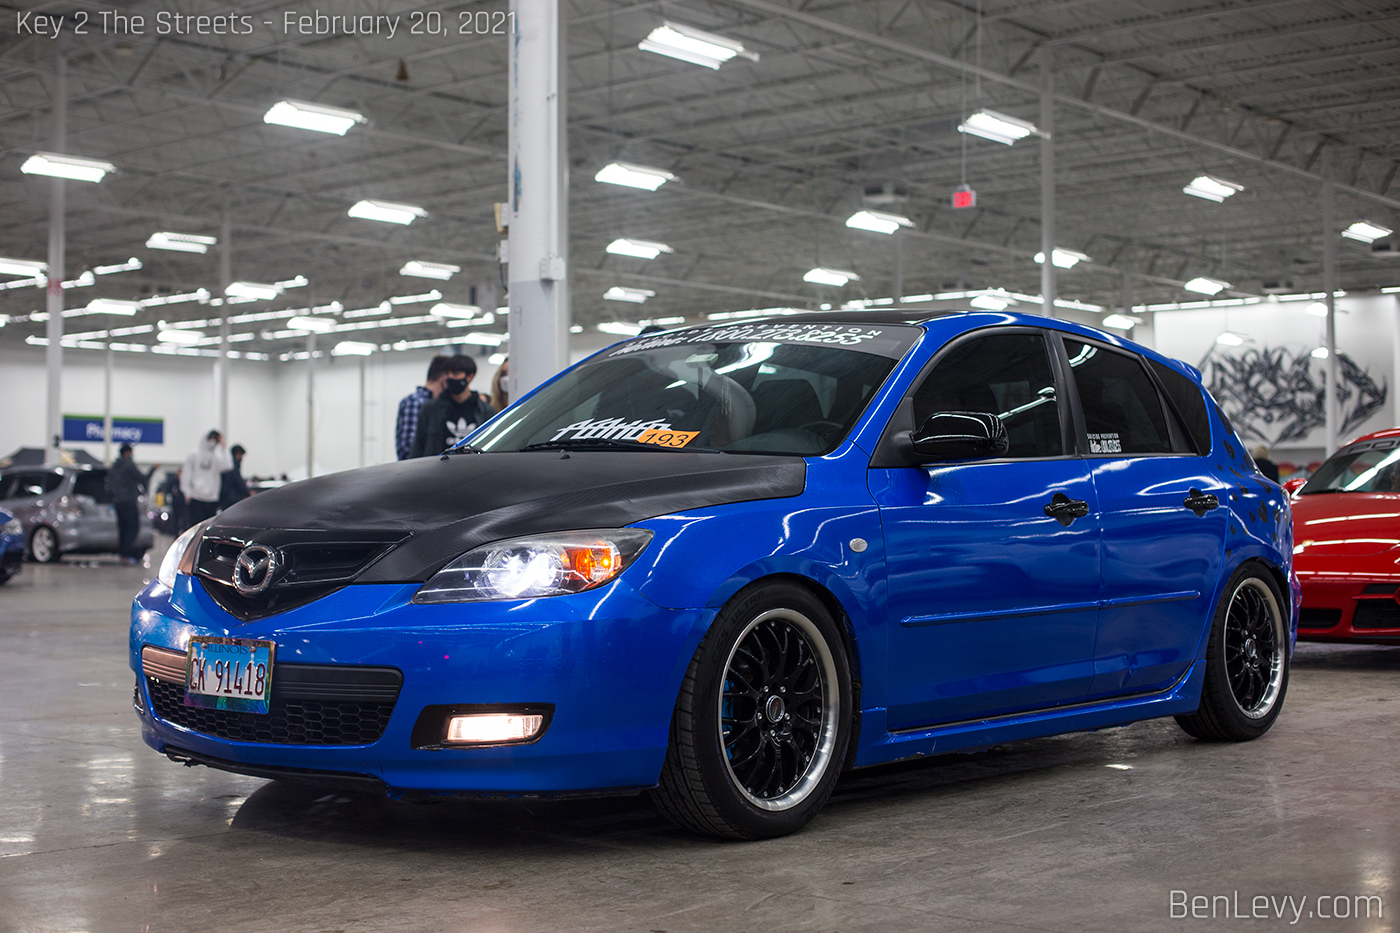 Blue 1st Gen Mazda3